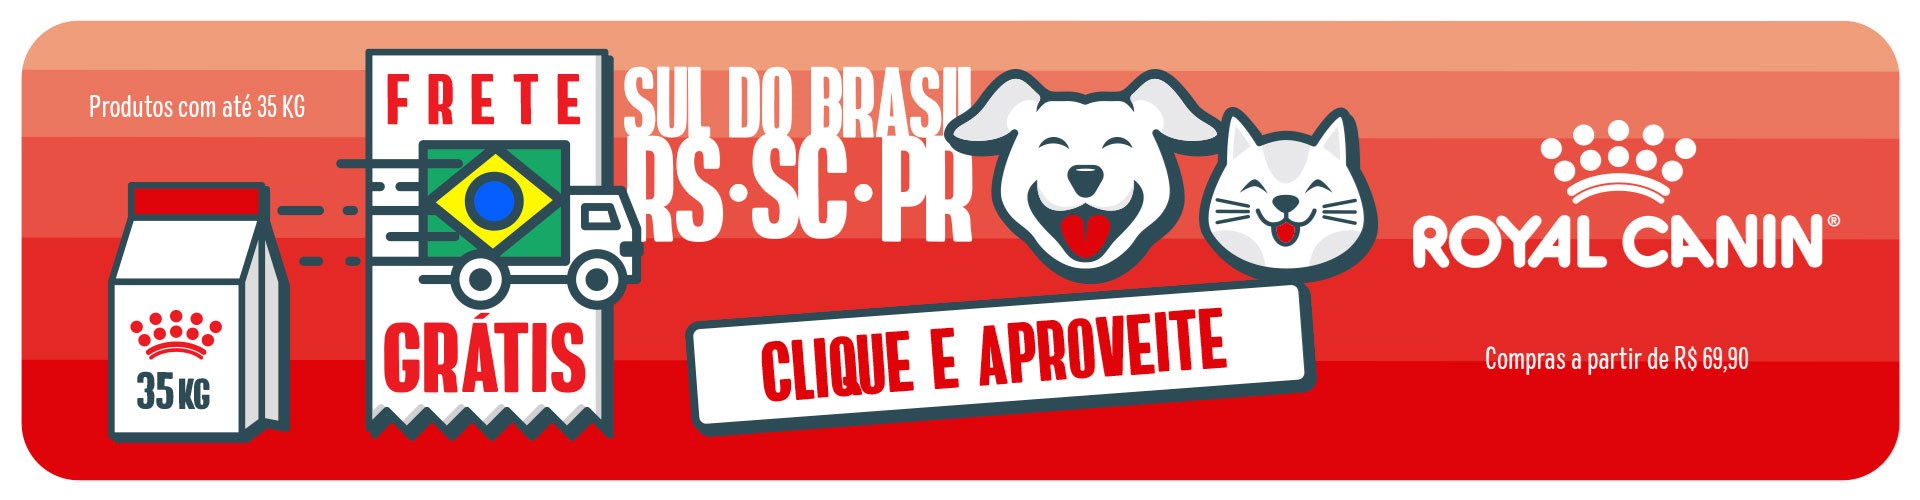 Frete Grátis Royal Canin para o Sul do Brasil!